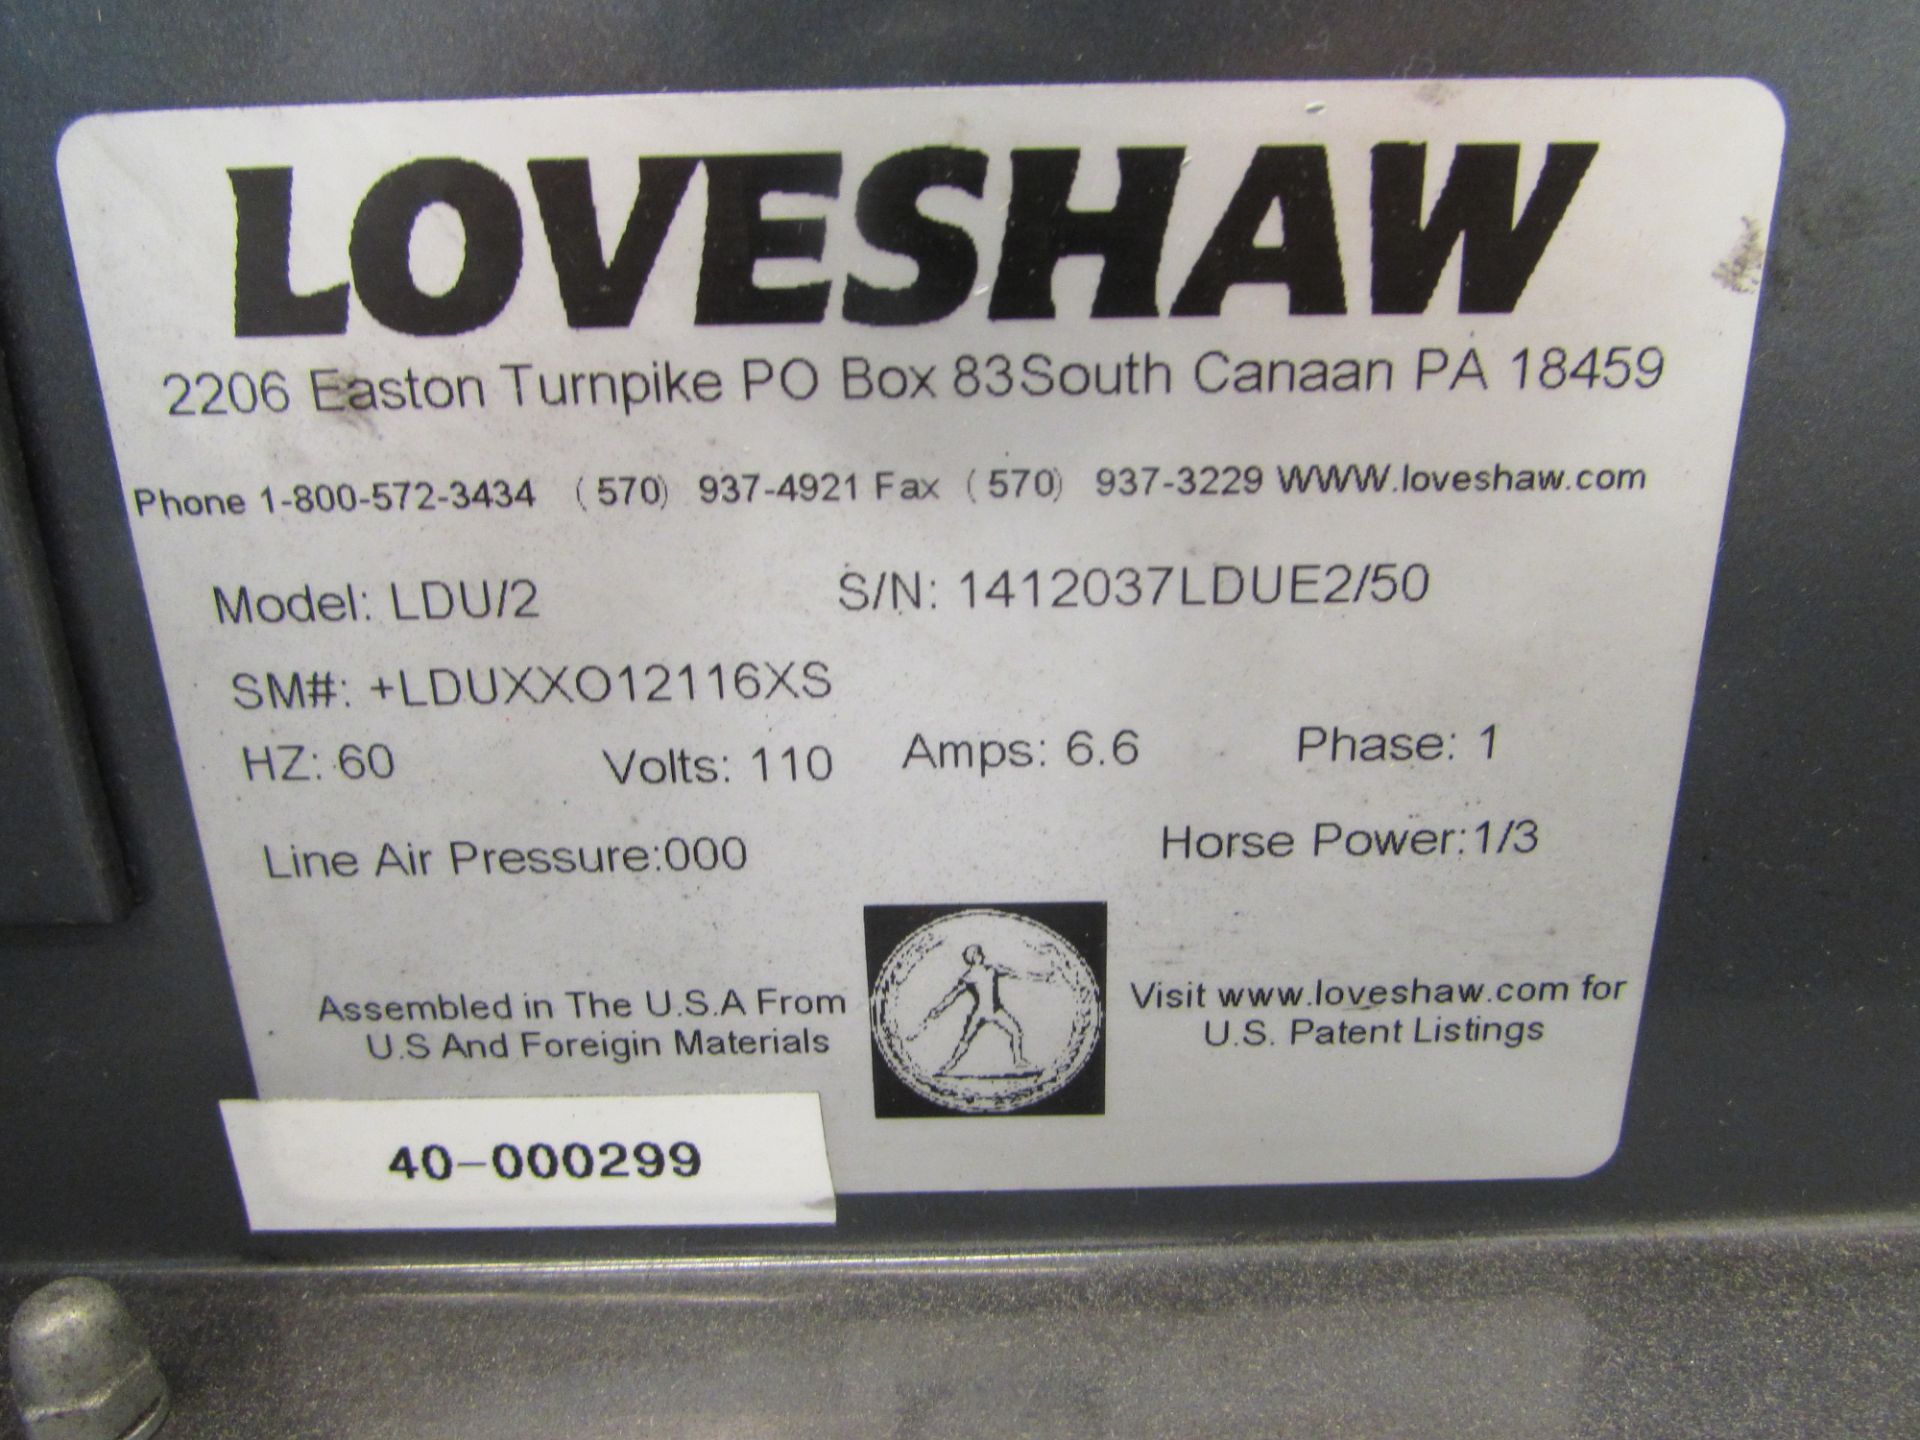 2014 Loveshaw Little David Case Sealer, Model LDU/2, S/N 1412037LDUE2/50, 32" Wide x 57" Long x - Image 5 of 6